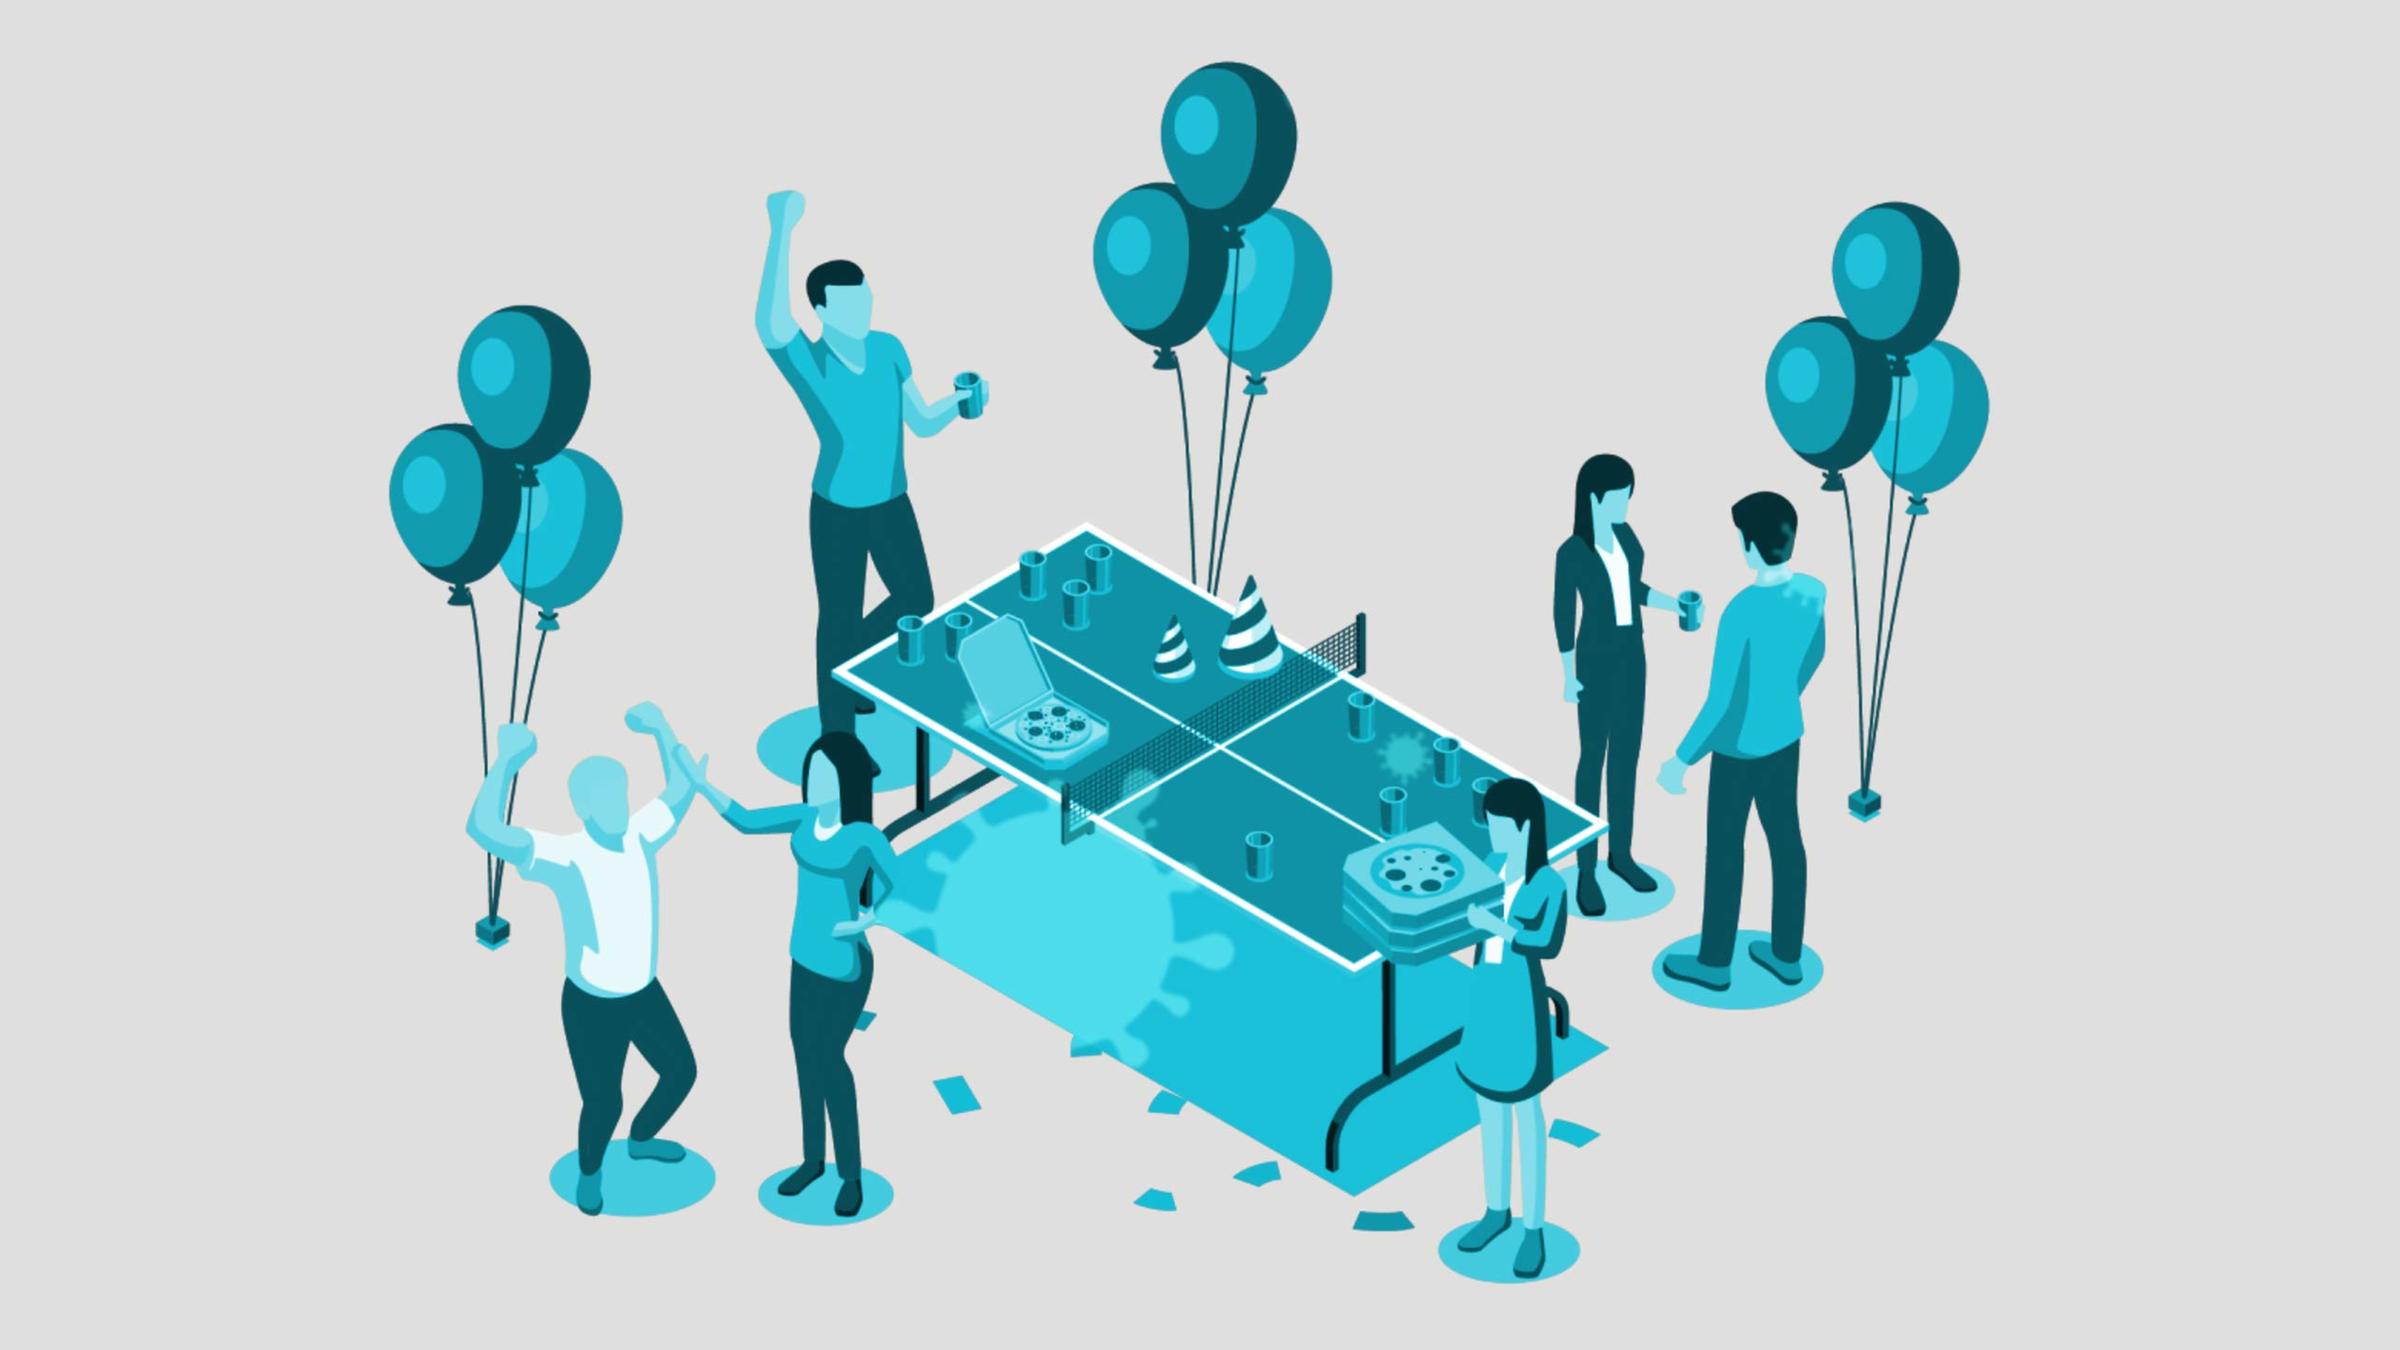 Die Illustration zeigt eine Party-Szene: Mehrere Menschen stehen feiernd um eine Tischtennis-Platte, es gibt Luftballons, Pizzen, Getränke. Ein Coronavirus symbolisiert, dass die Menschen sich infiziert haben. 